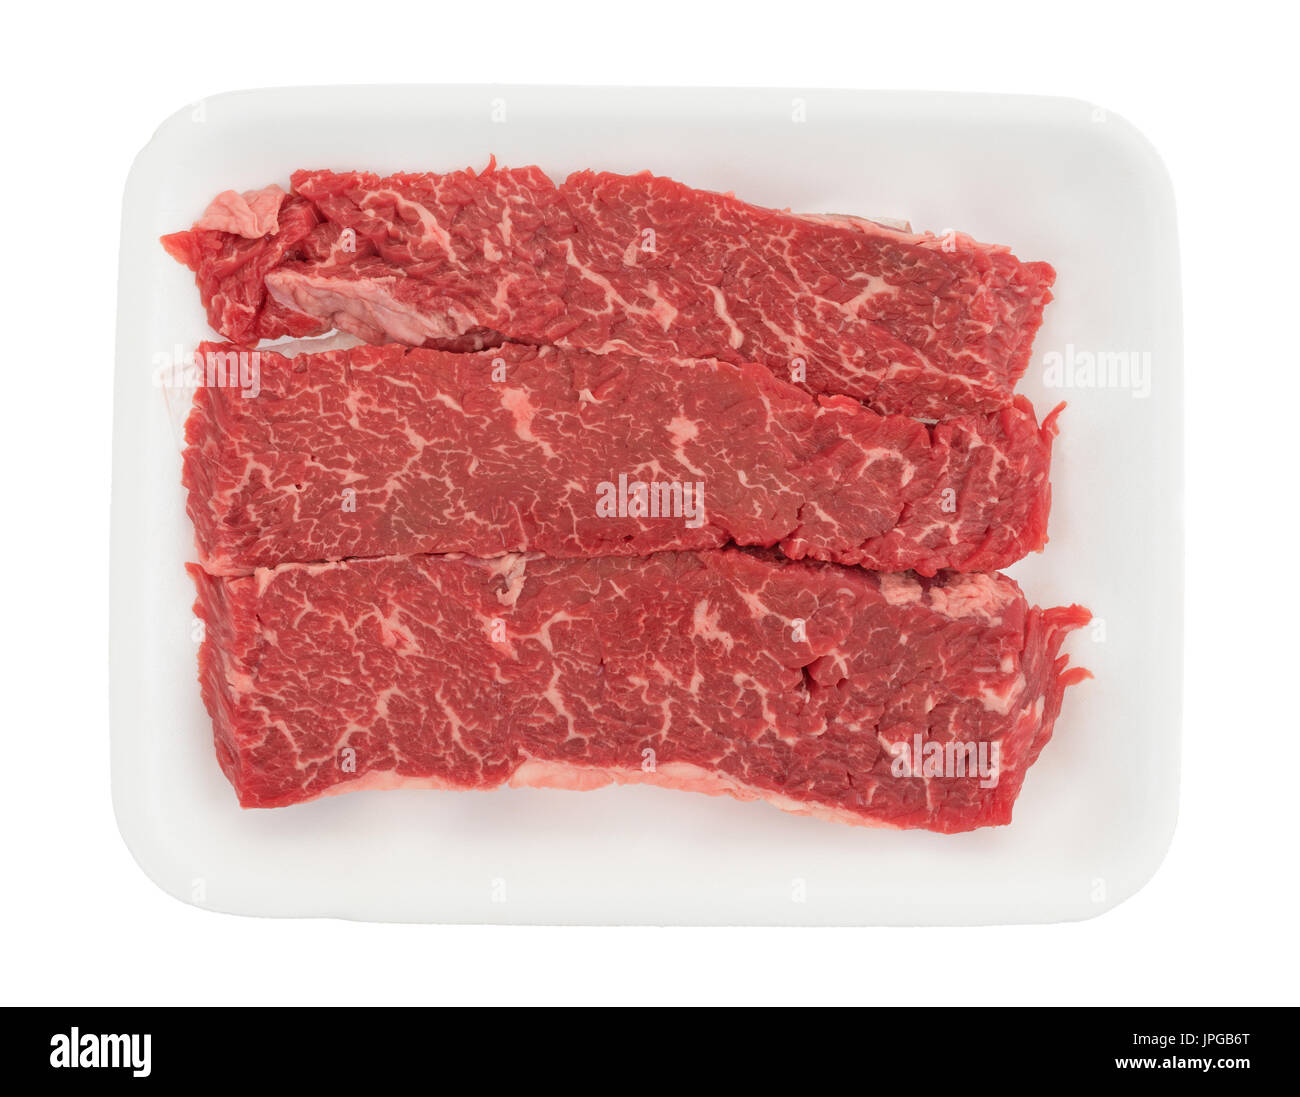 Draufsicht auf rohes Rindfleisch Lende Filet Grillen Tipps auf einem Schaum-Metzger-Tablett isoliert auf einem weißen Hintergrund. Stockfoto